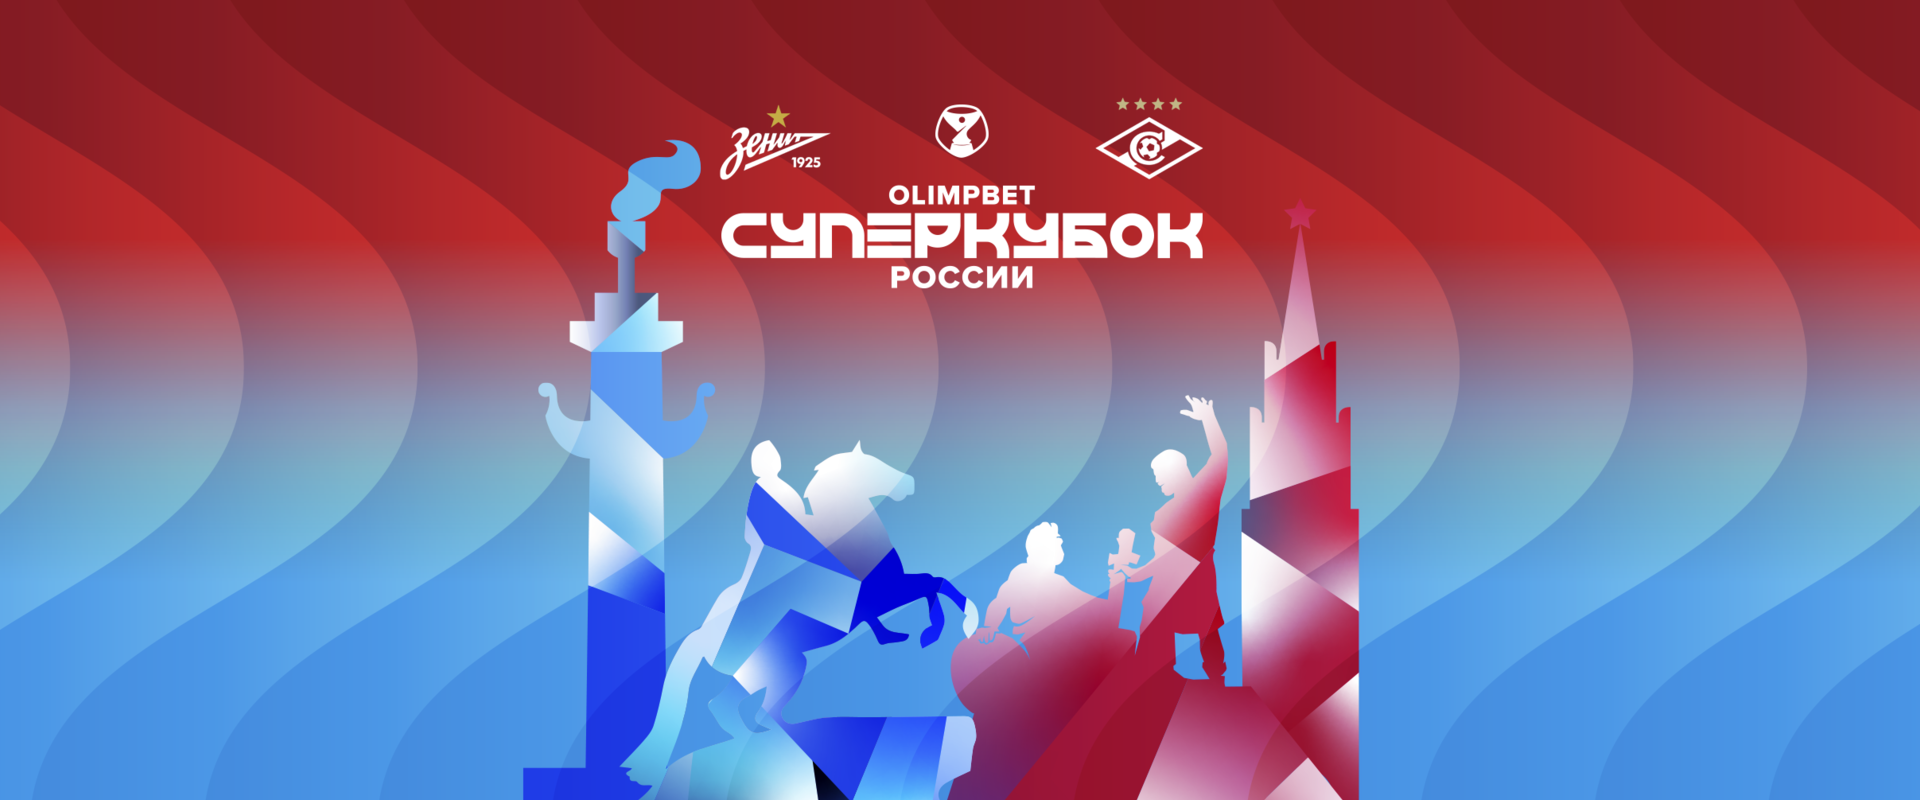 Открыта продажа билетов на матч OLIMPBET Суперкубка России